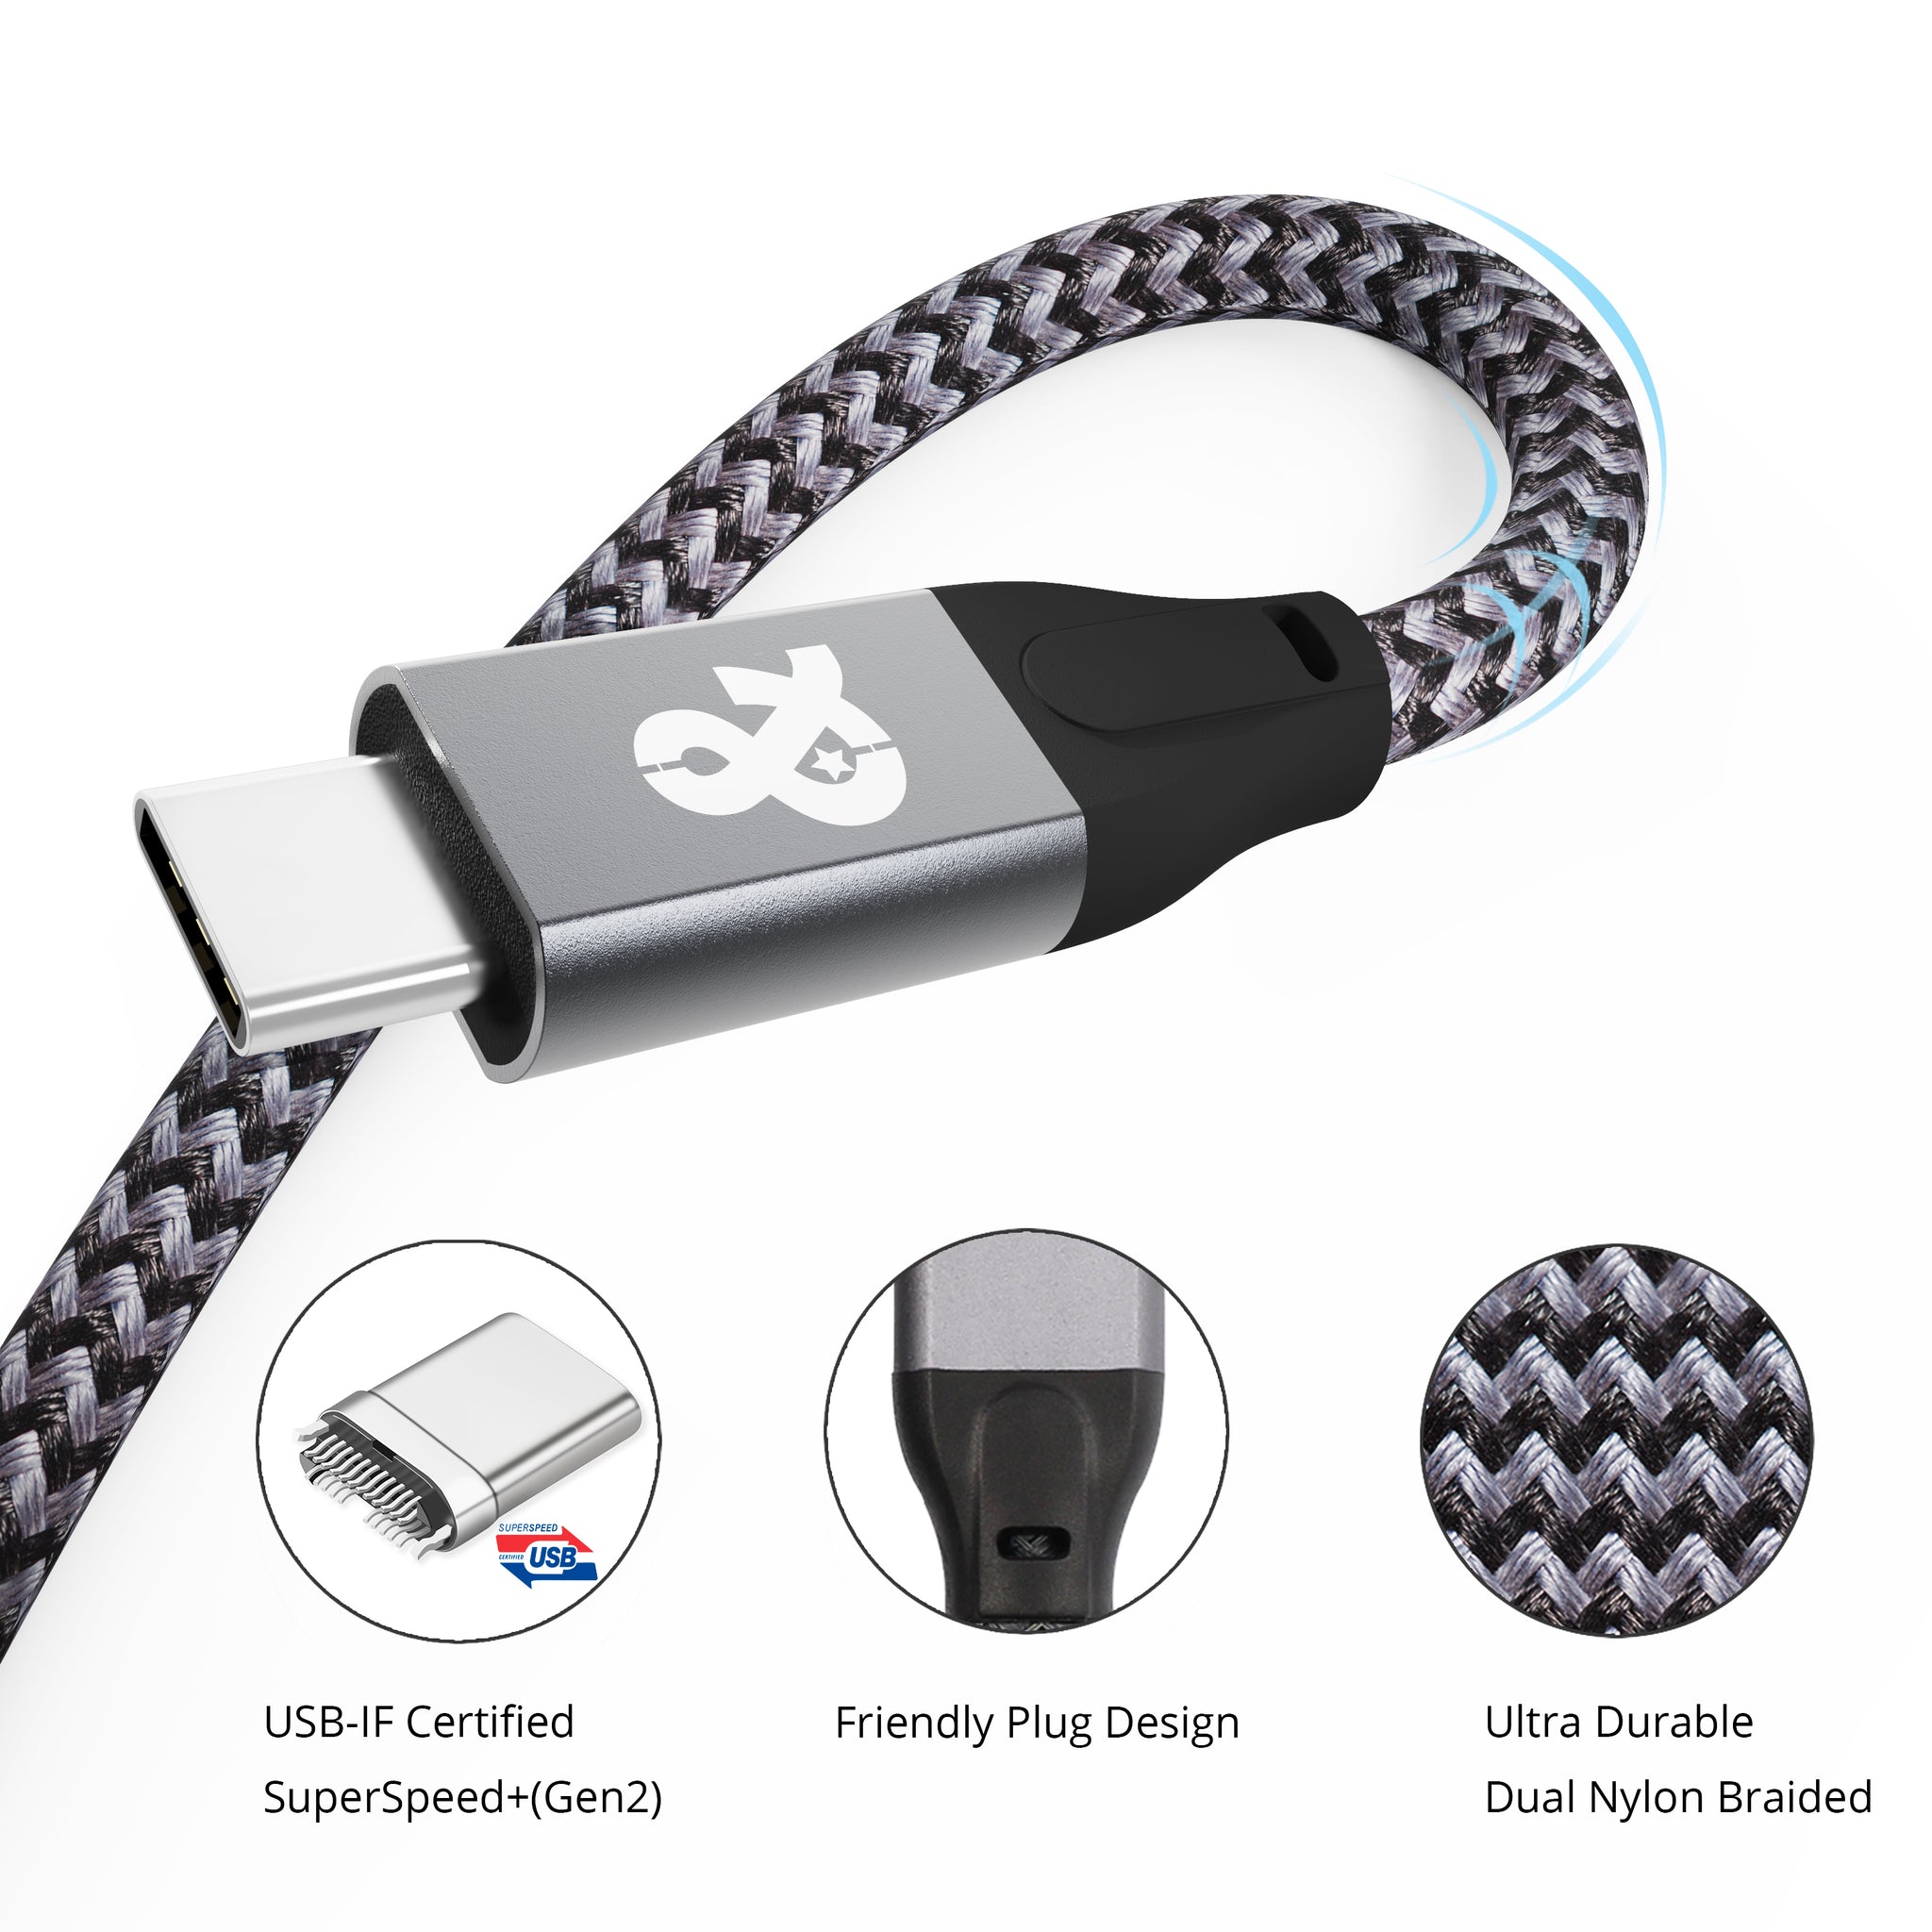 ANDNOVA USB 3.1 Gen2 Cable 3.3 ft